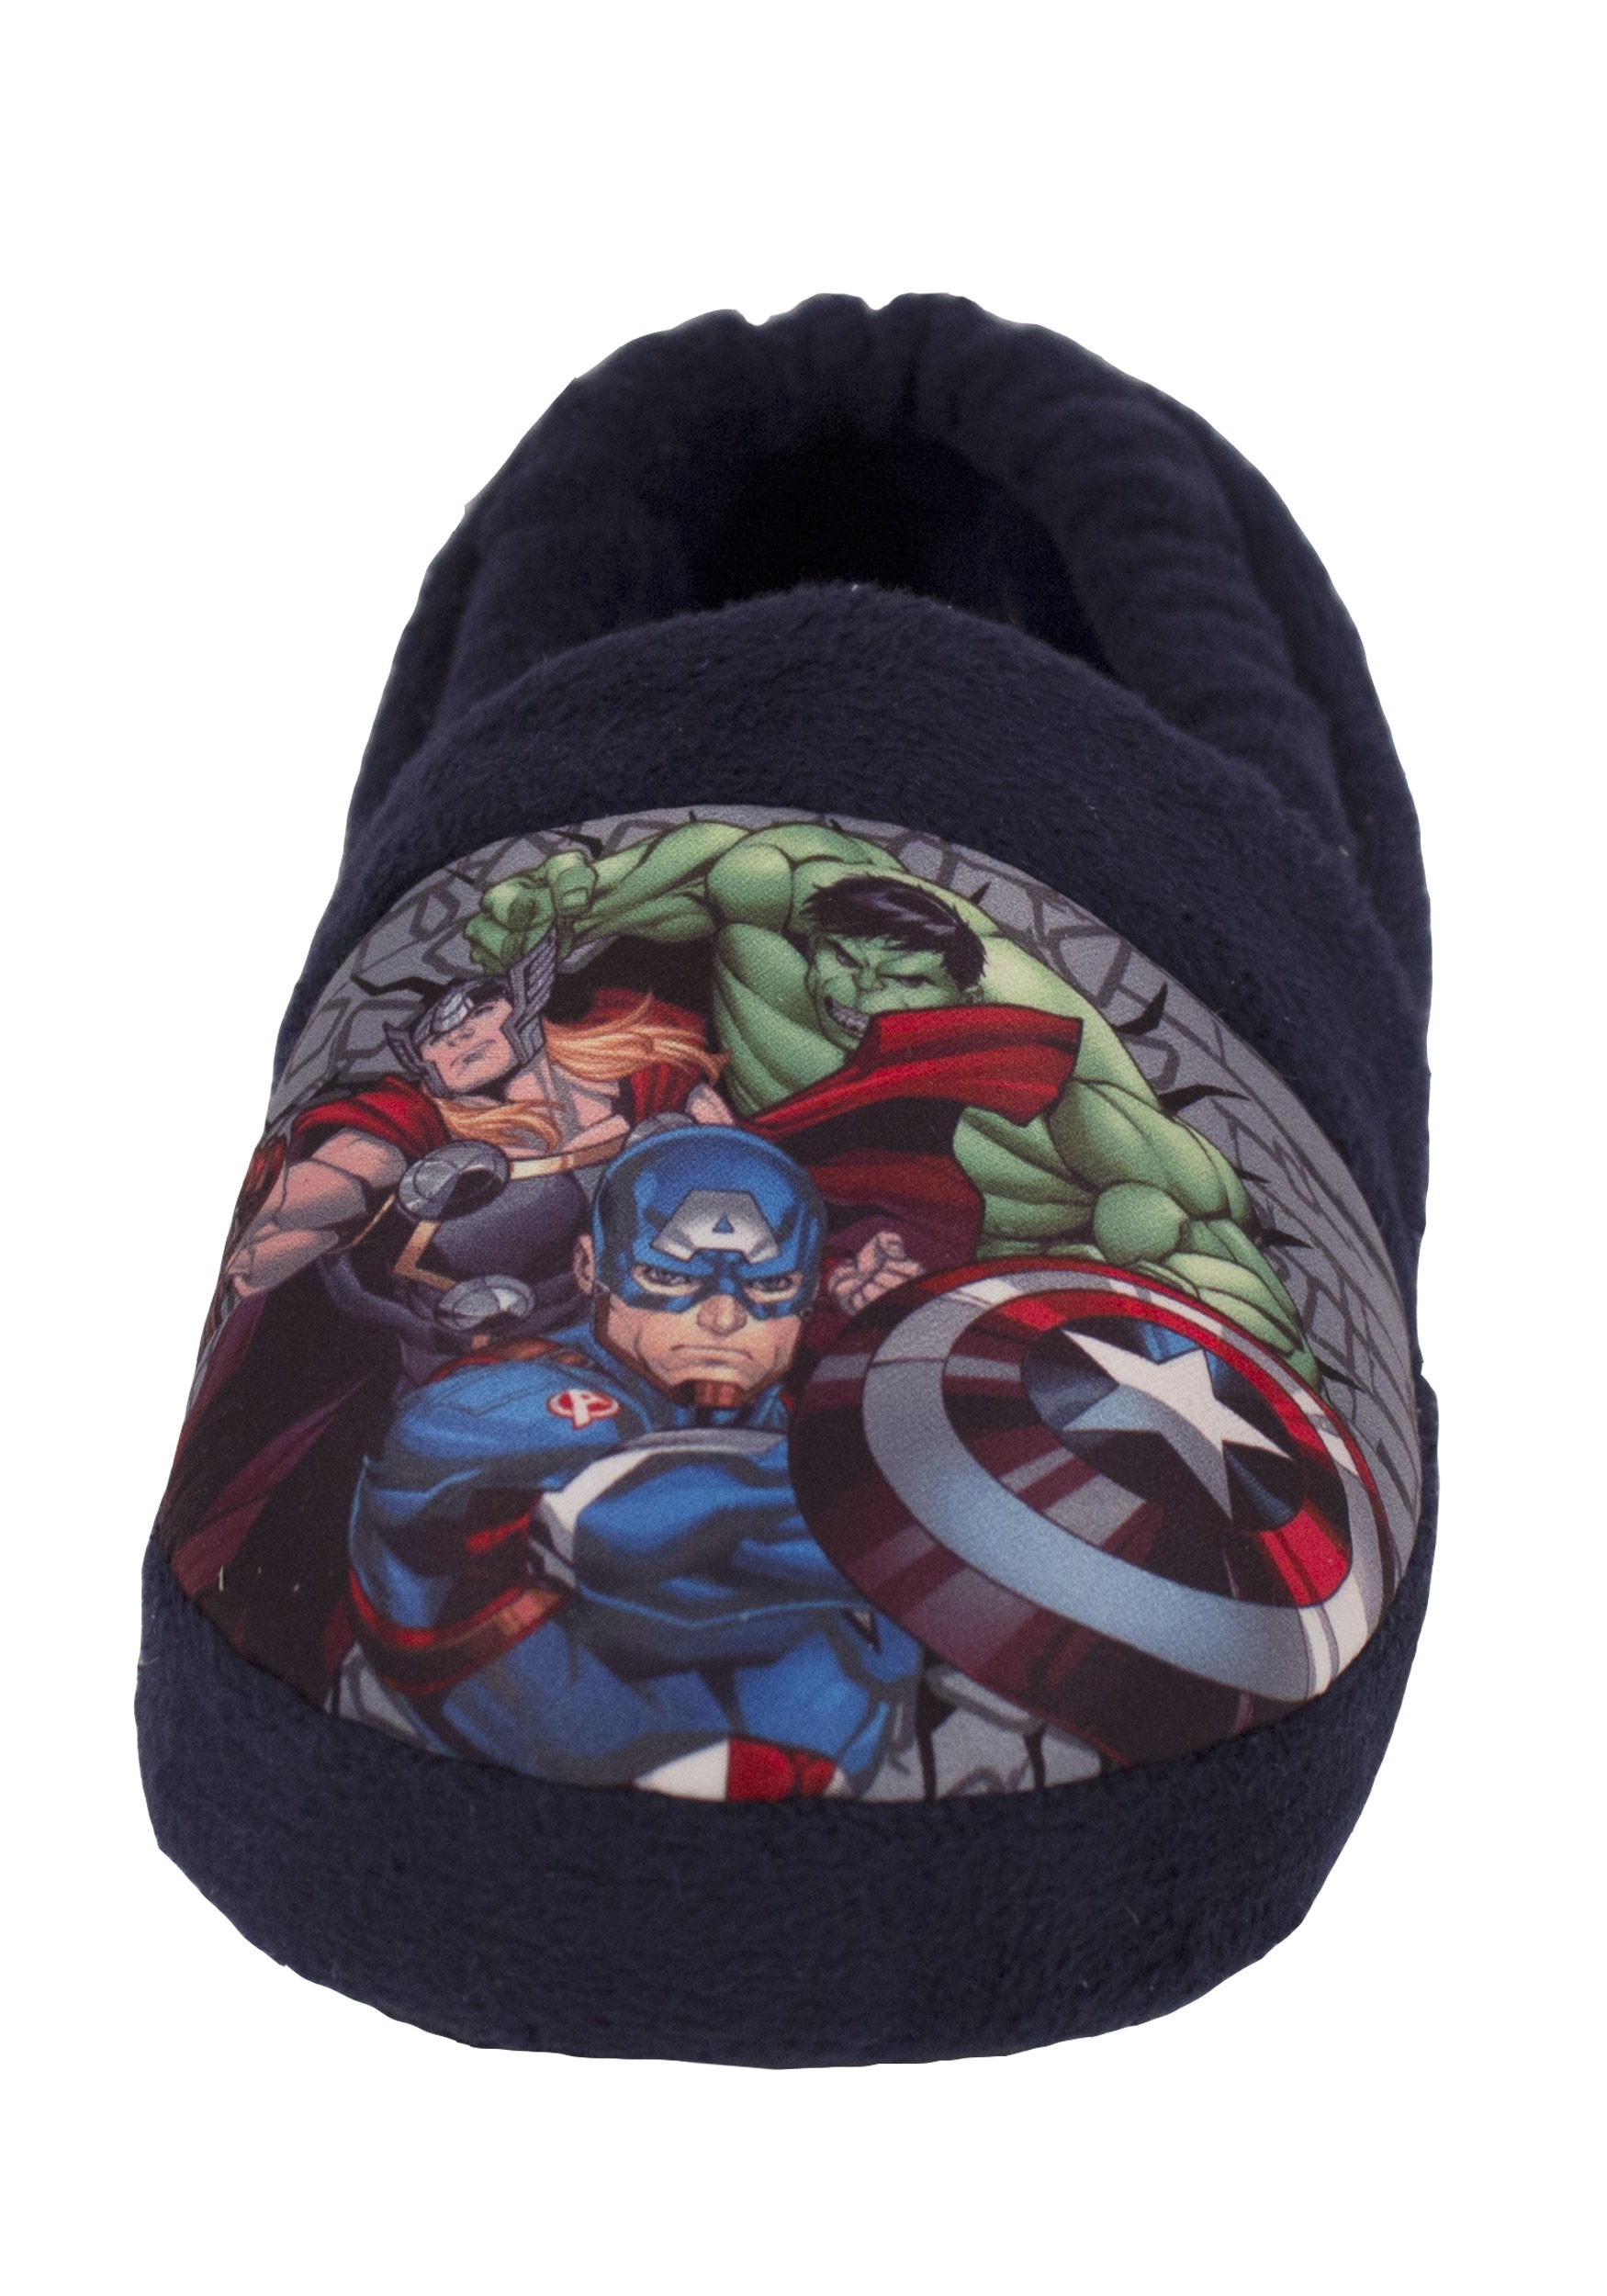 avengers slippers kids